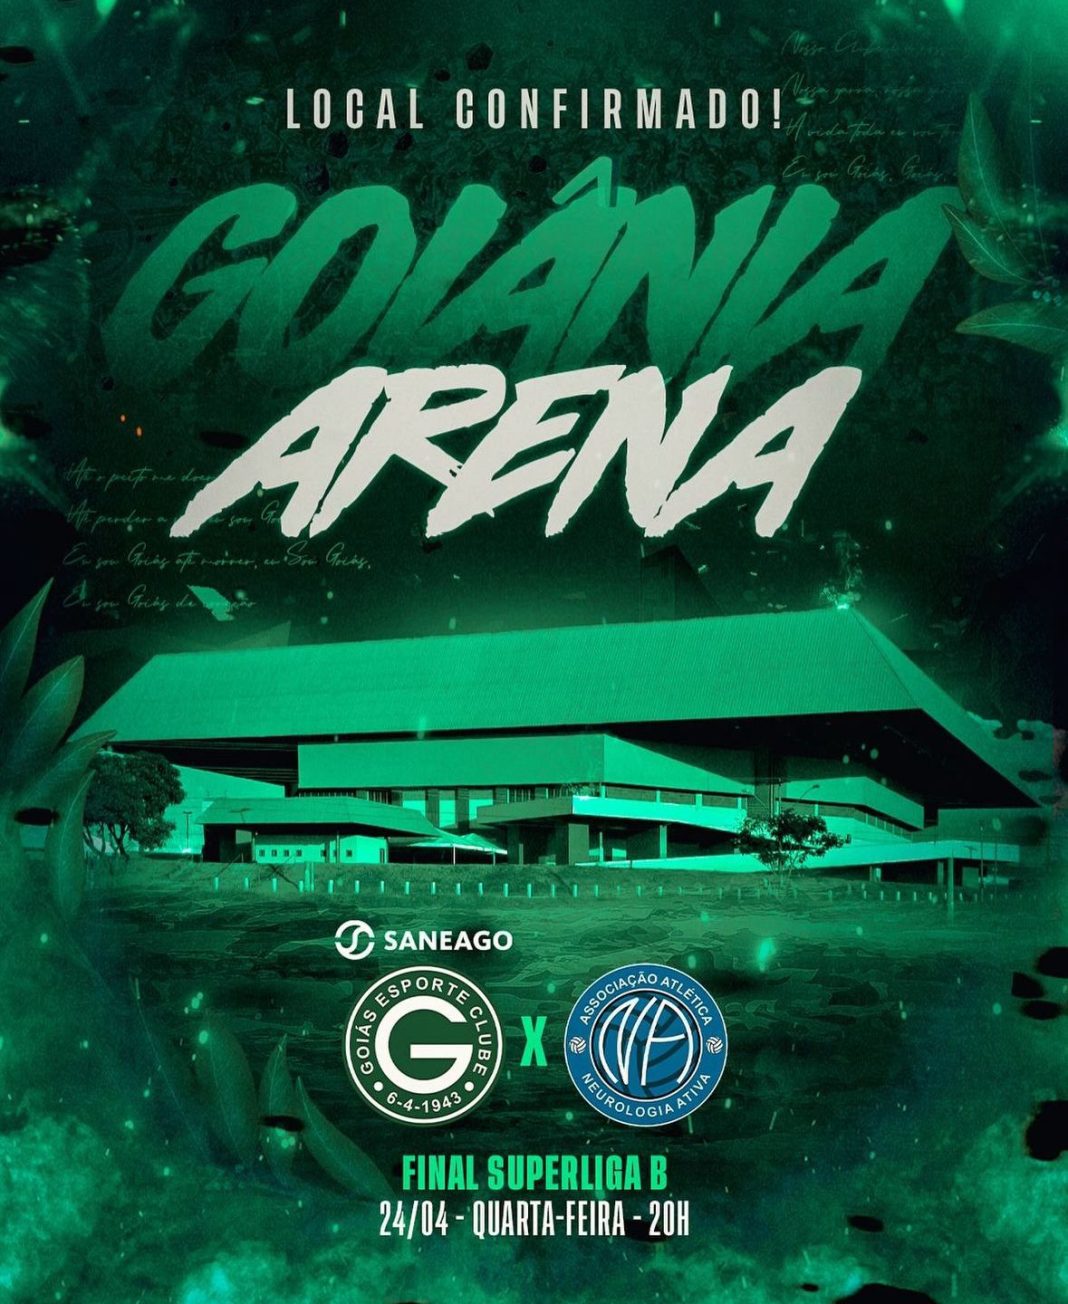 Grande Final da Superliga B, acontece no Goiânia Arena nesta quarta feira,24.